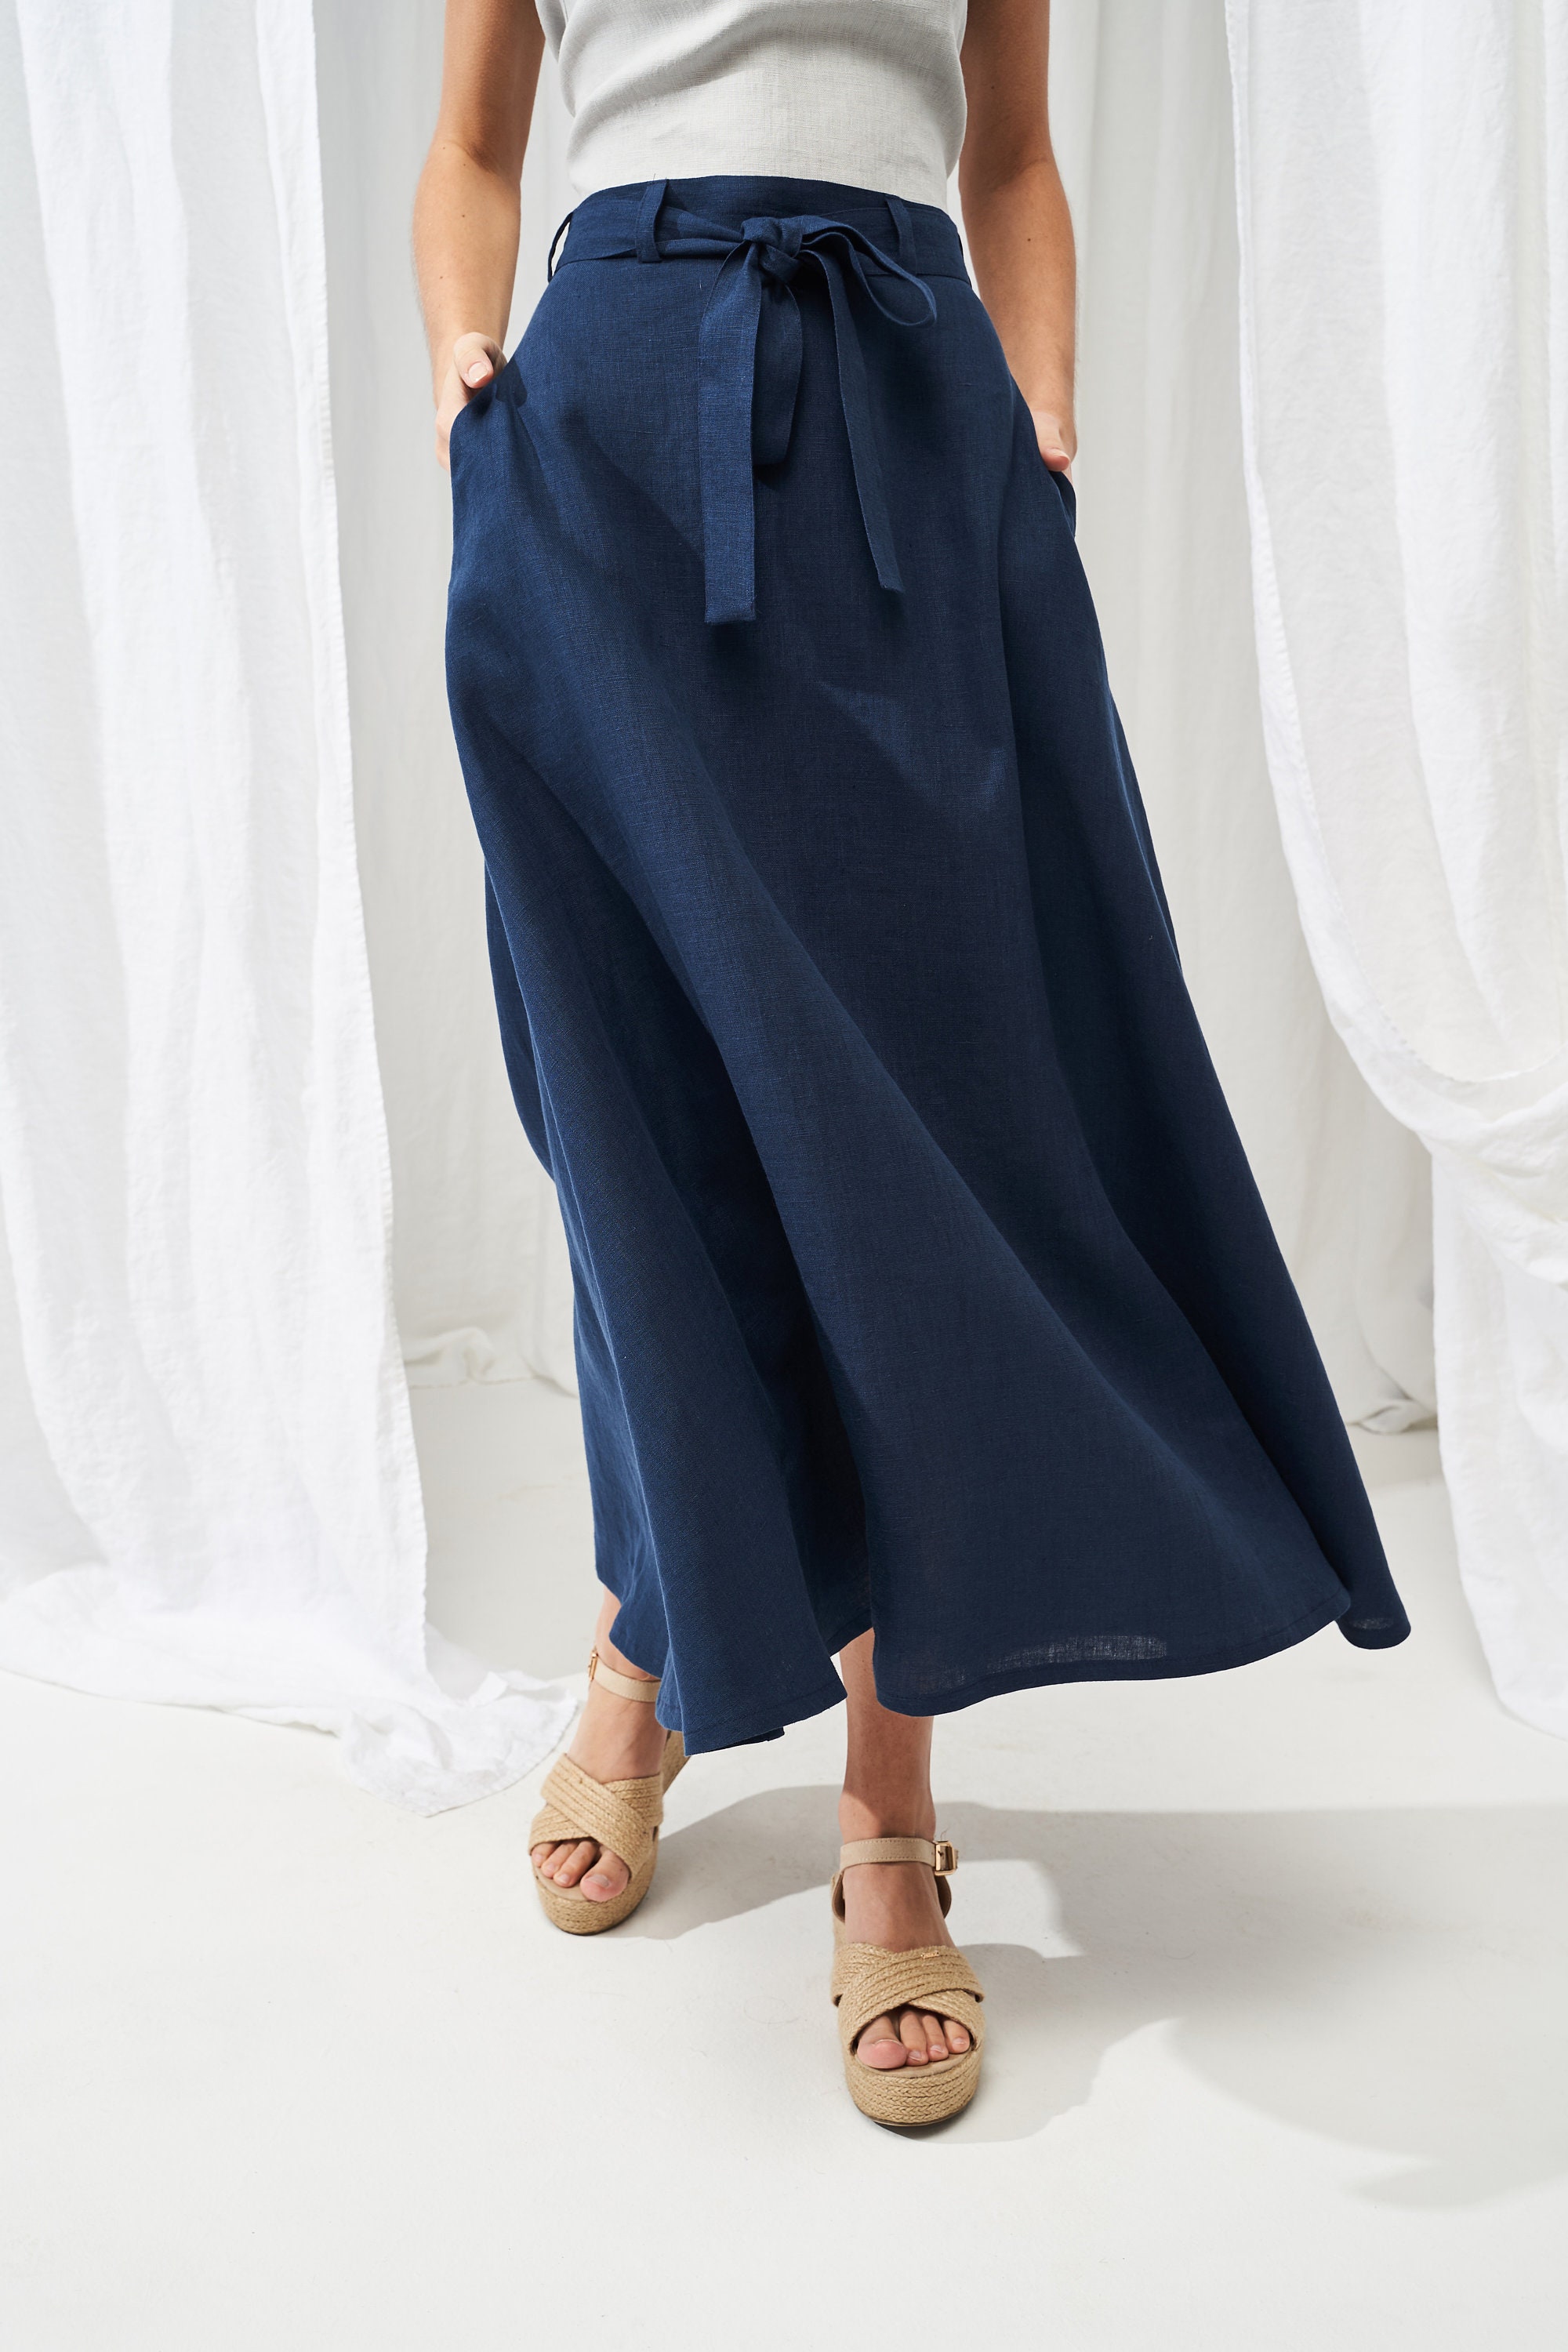 Long Linen Skirt ALESSIA Maxi Linen Skirt With Belt High - Etsy